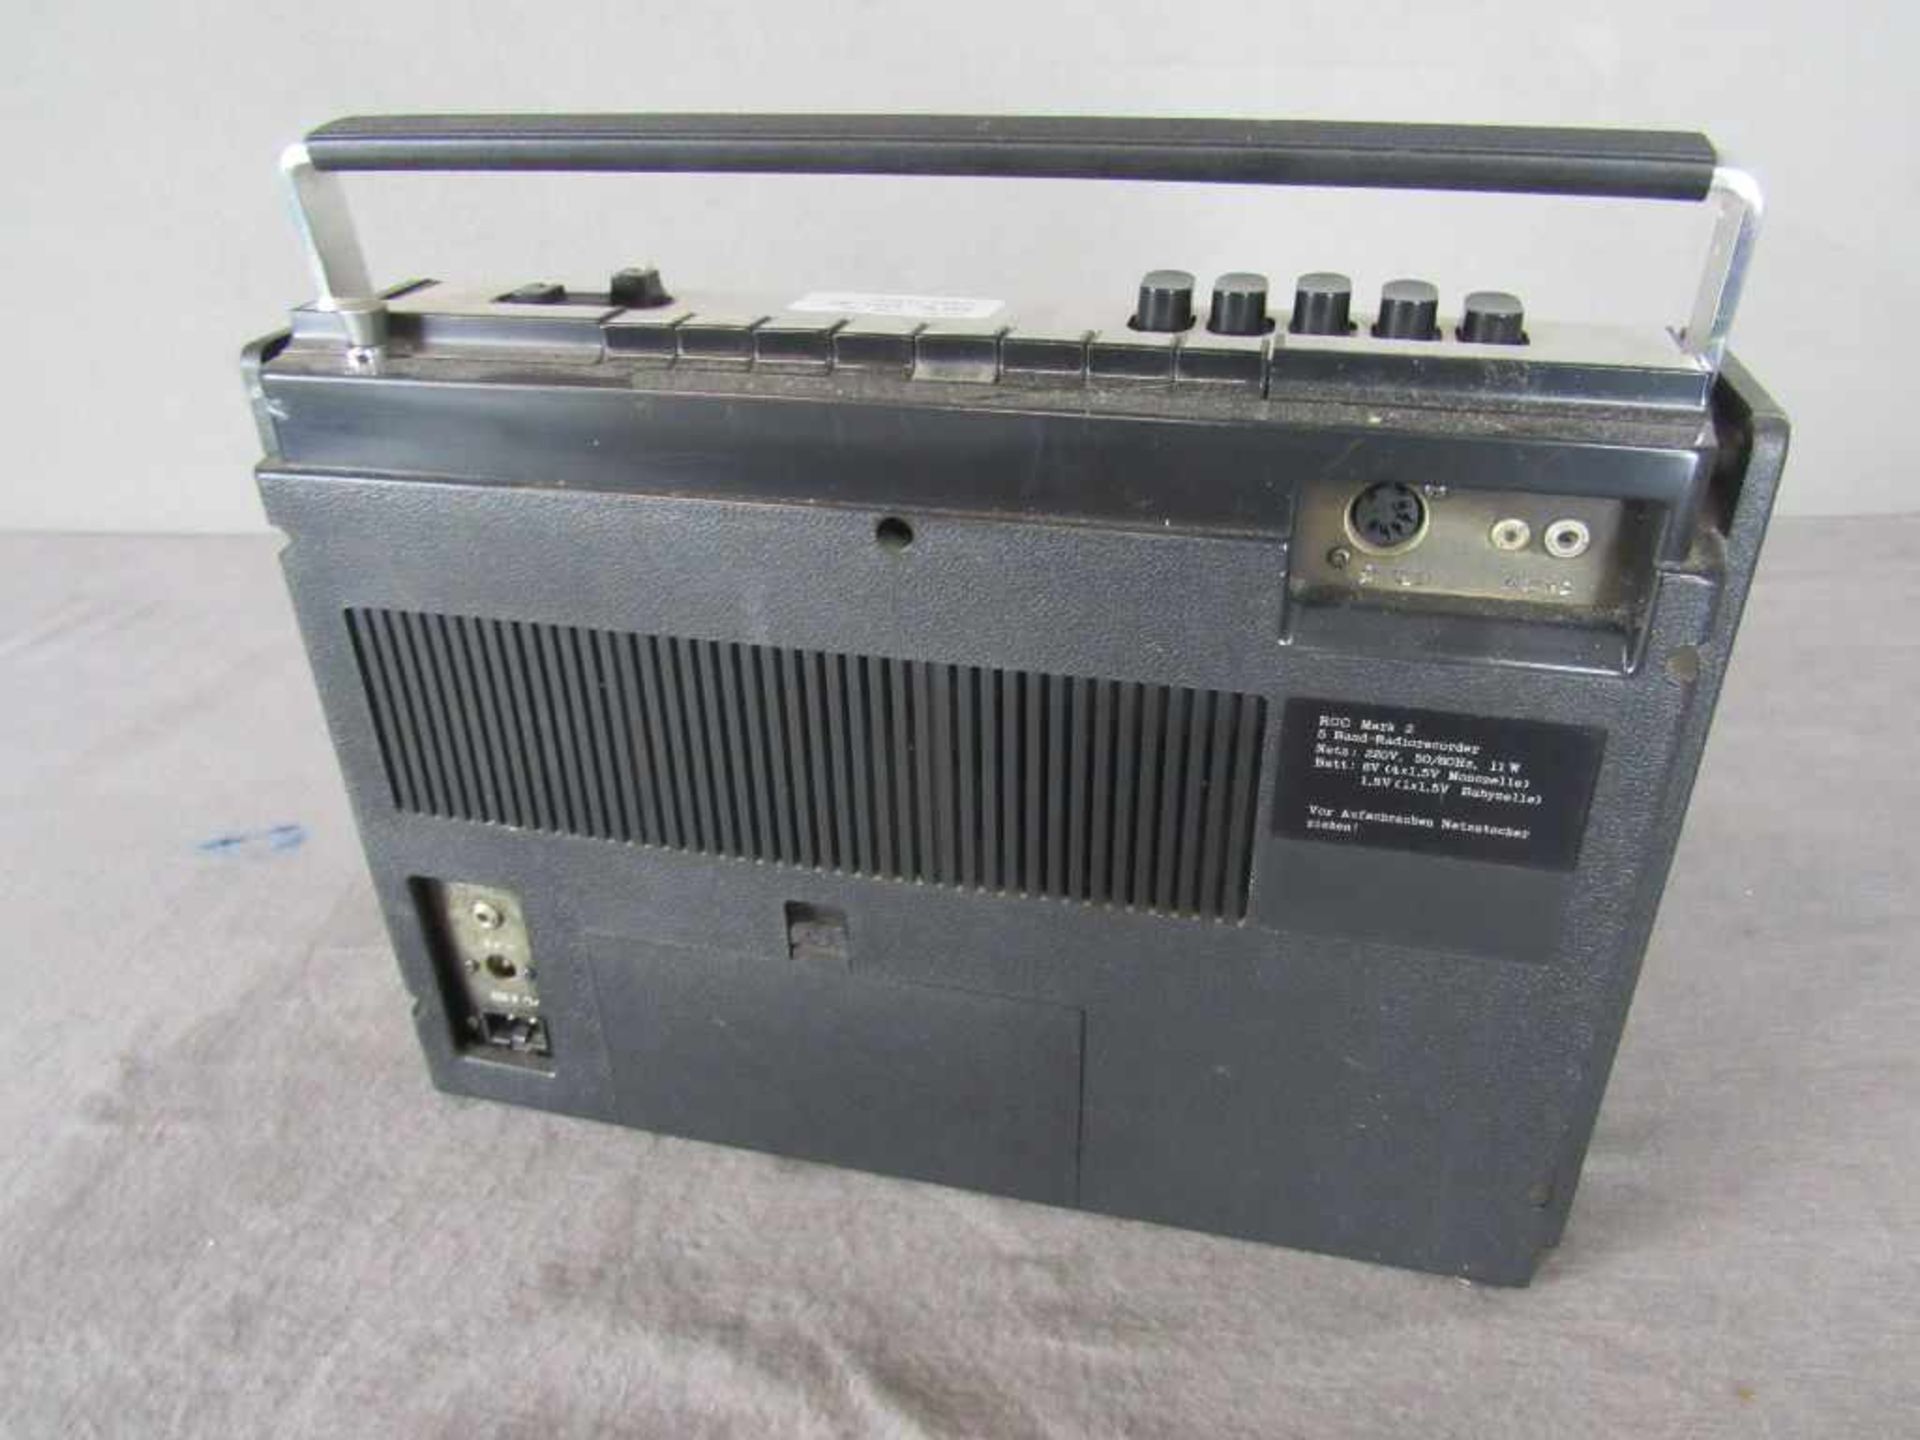 Kofferradio 70er Jahre Hersteller RCC Mark 2- - -20.00 % buyer's premium on the hammer price19. - Bild 3 aus 4